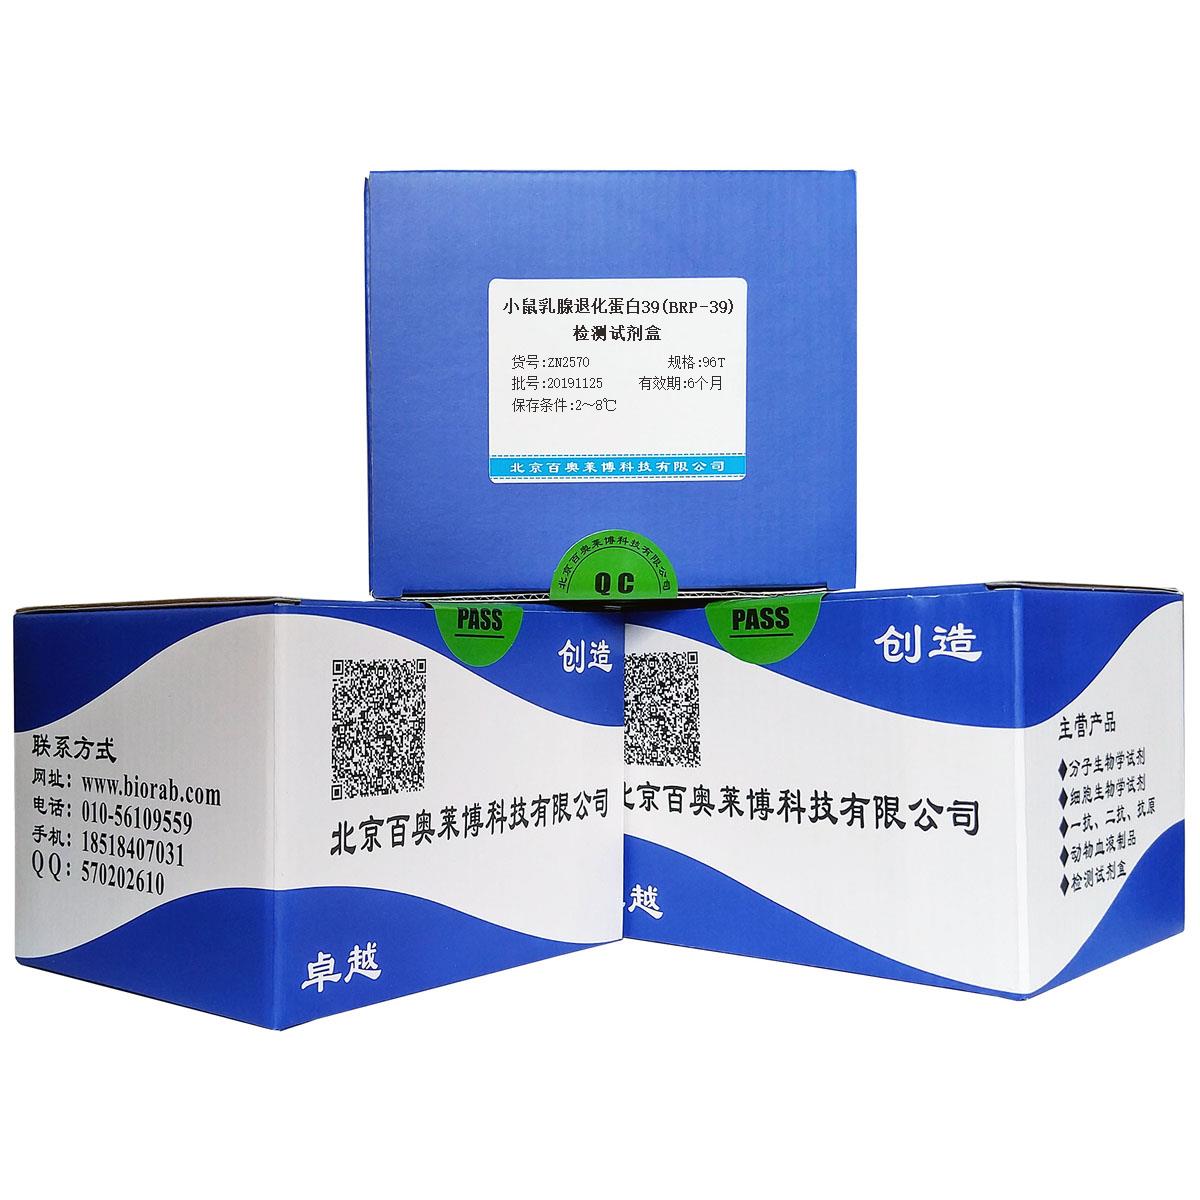 小鼠乳腺退化蛋白39(BRP-39)检测试剂盒